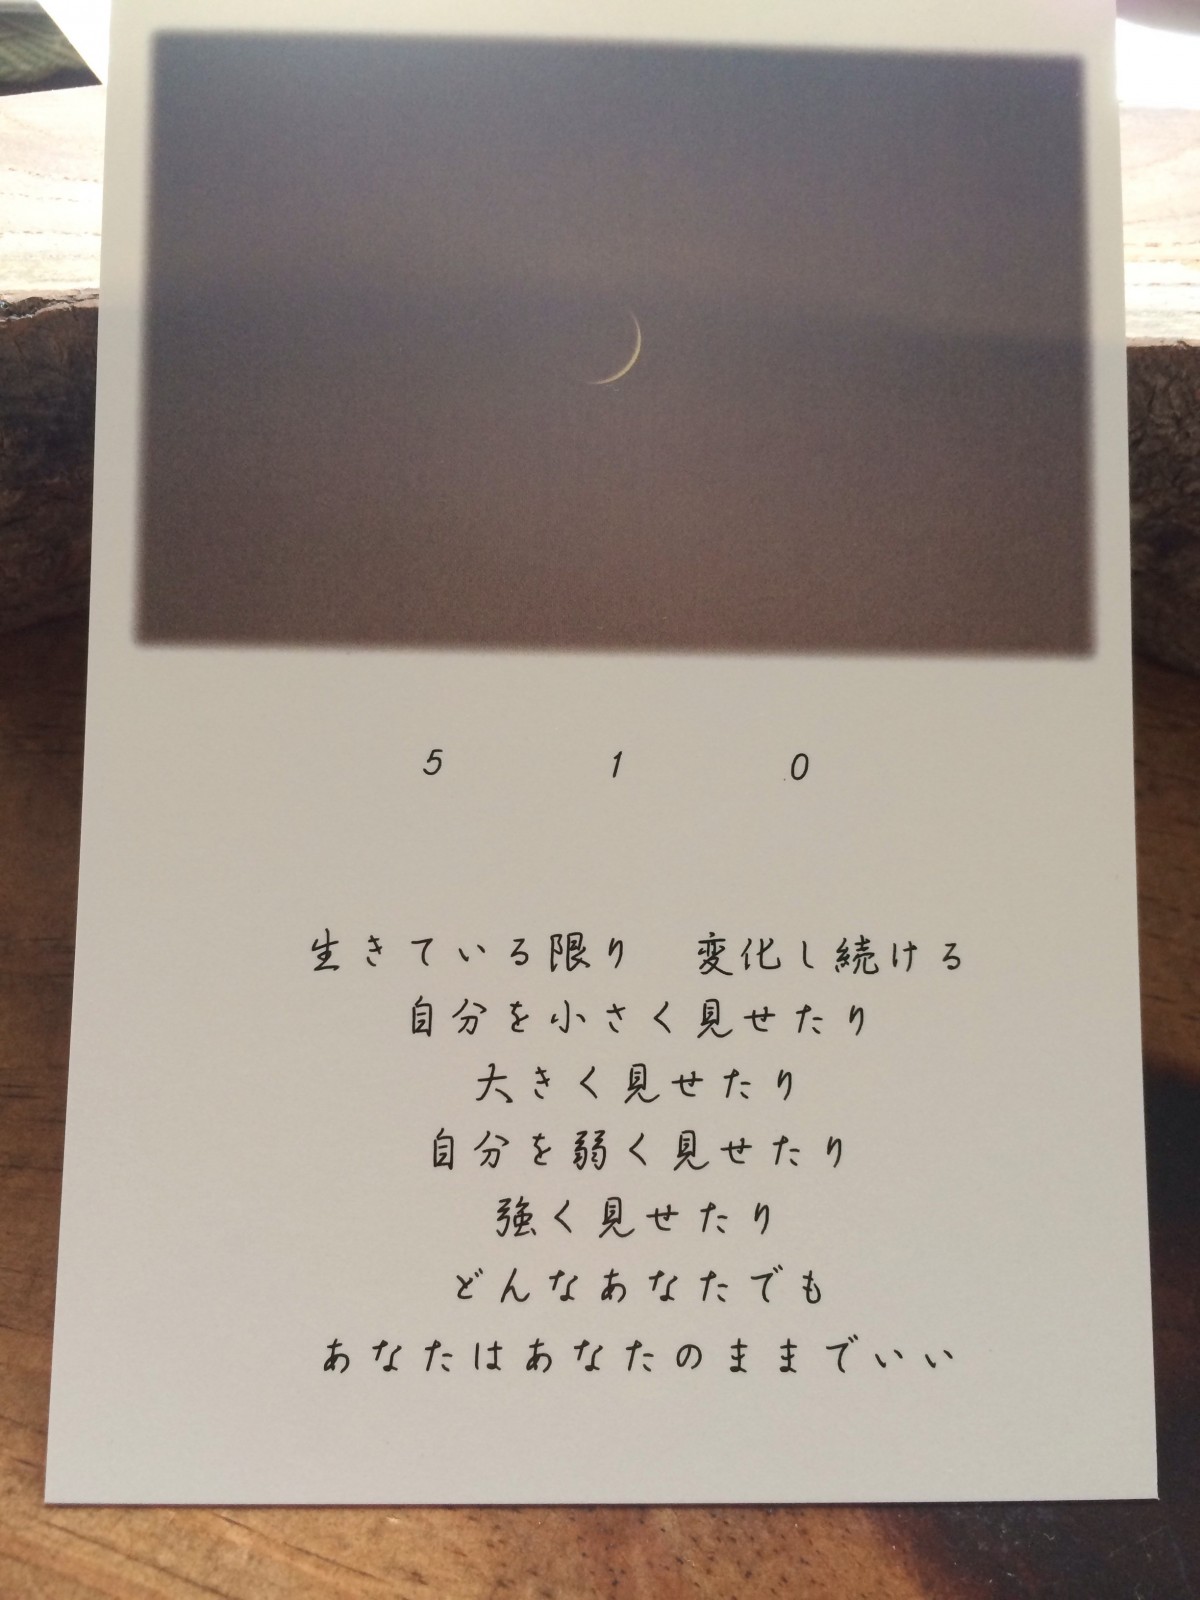 メッセージポストカード3枚セット Iichi ハンドメイド クラフト作品 手仕事品の通販